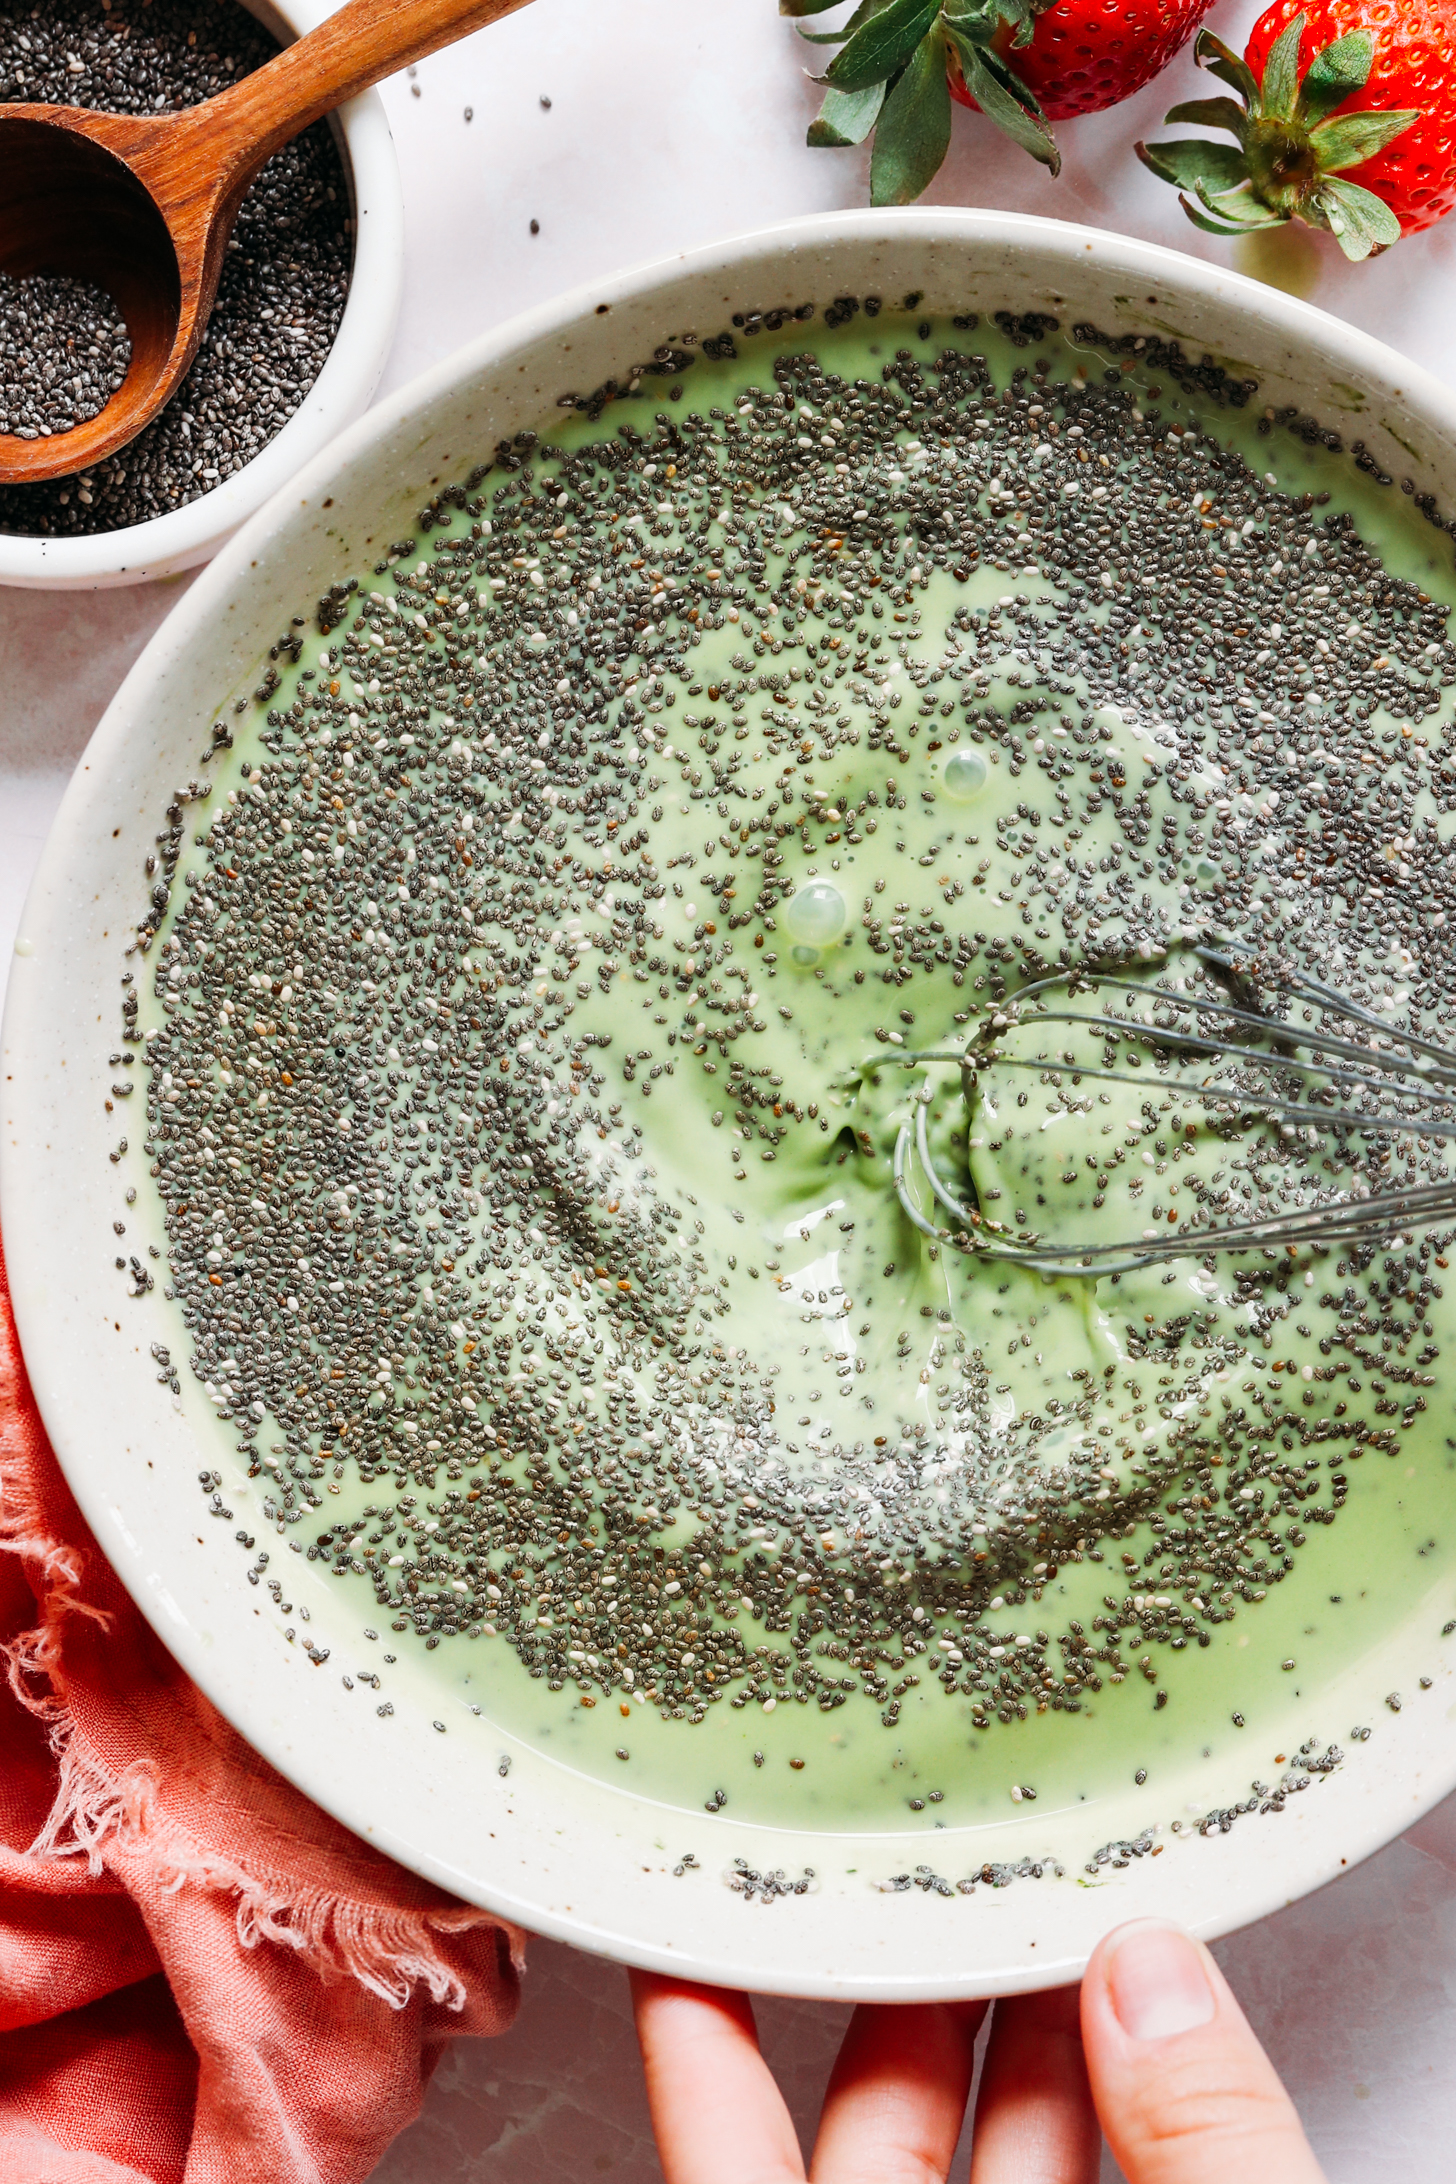 Batir las semillas de chía en una mezcla de matcha verde vibrante